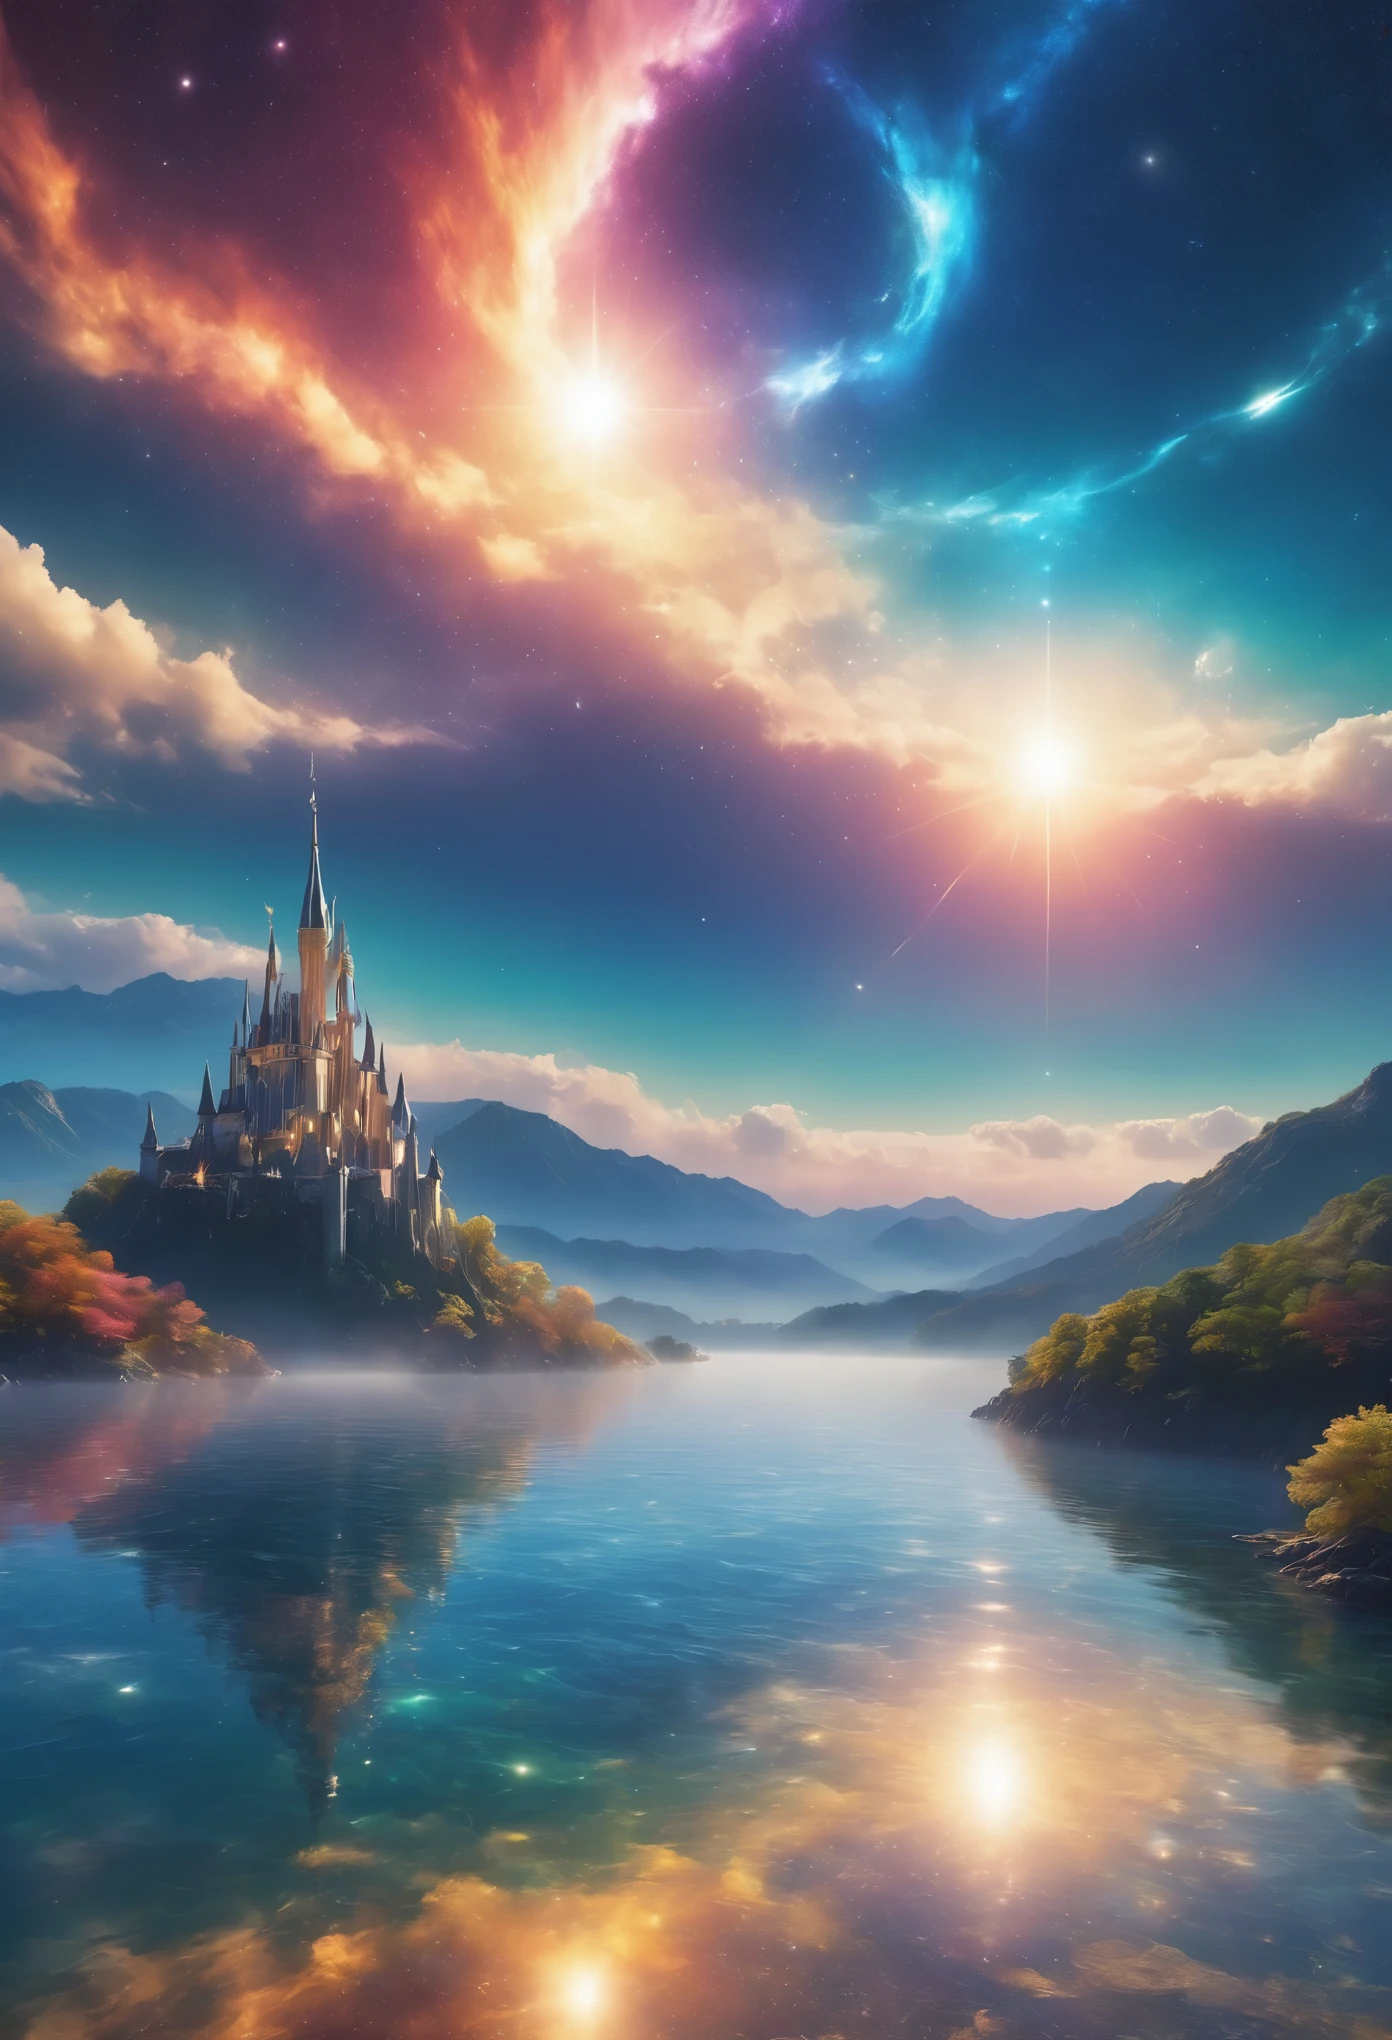 (8k, la plus haute qualité, chef-d&#39;œuvre, Style Final Fantasy: 1.2), (Irréaliste, Photoréaliste: 1.37), (une dame mage debout au bord du lac, énorme buste rebondissant:1.1), paysage de rêve, fantaisie, Des paysages irréels, Super détaillé, Château médiéval volant, Île flottante dans le ciel, Tourbillon de lumière à sept couleurs, (流星のM.Un oiseau brillant à longue queue vole dans le ciel:1.3), aurore, Des éclairs intenses, voie Lactée, lumière complexe, M.々Lumière colorée, Grand Lac, Ciel étoilé reflété à la surface du lac, D&#39;innombrables étoiles brillantes, météores, De nombreux météores, Aura de, (Un pilier de lumière émanait du sol:1,2), 複雑な文M.cercle magique,